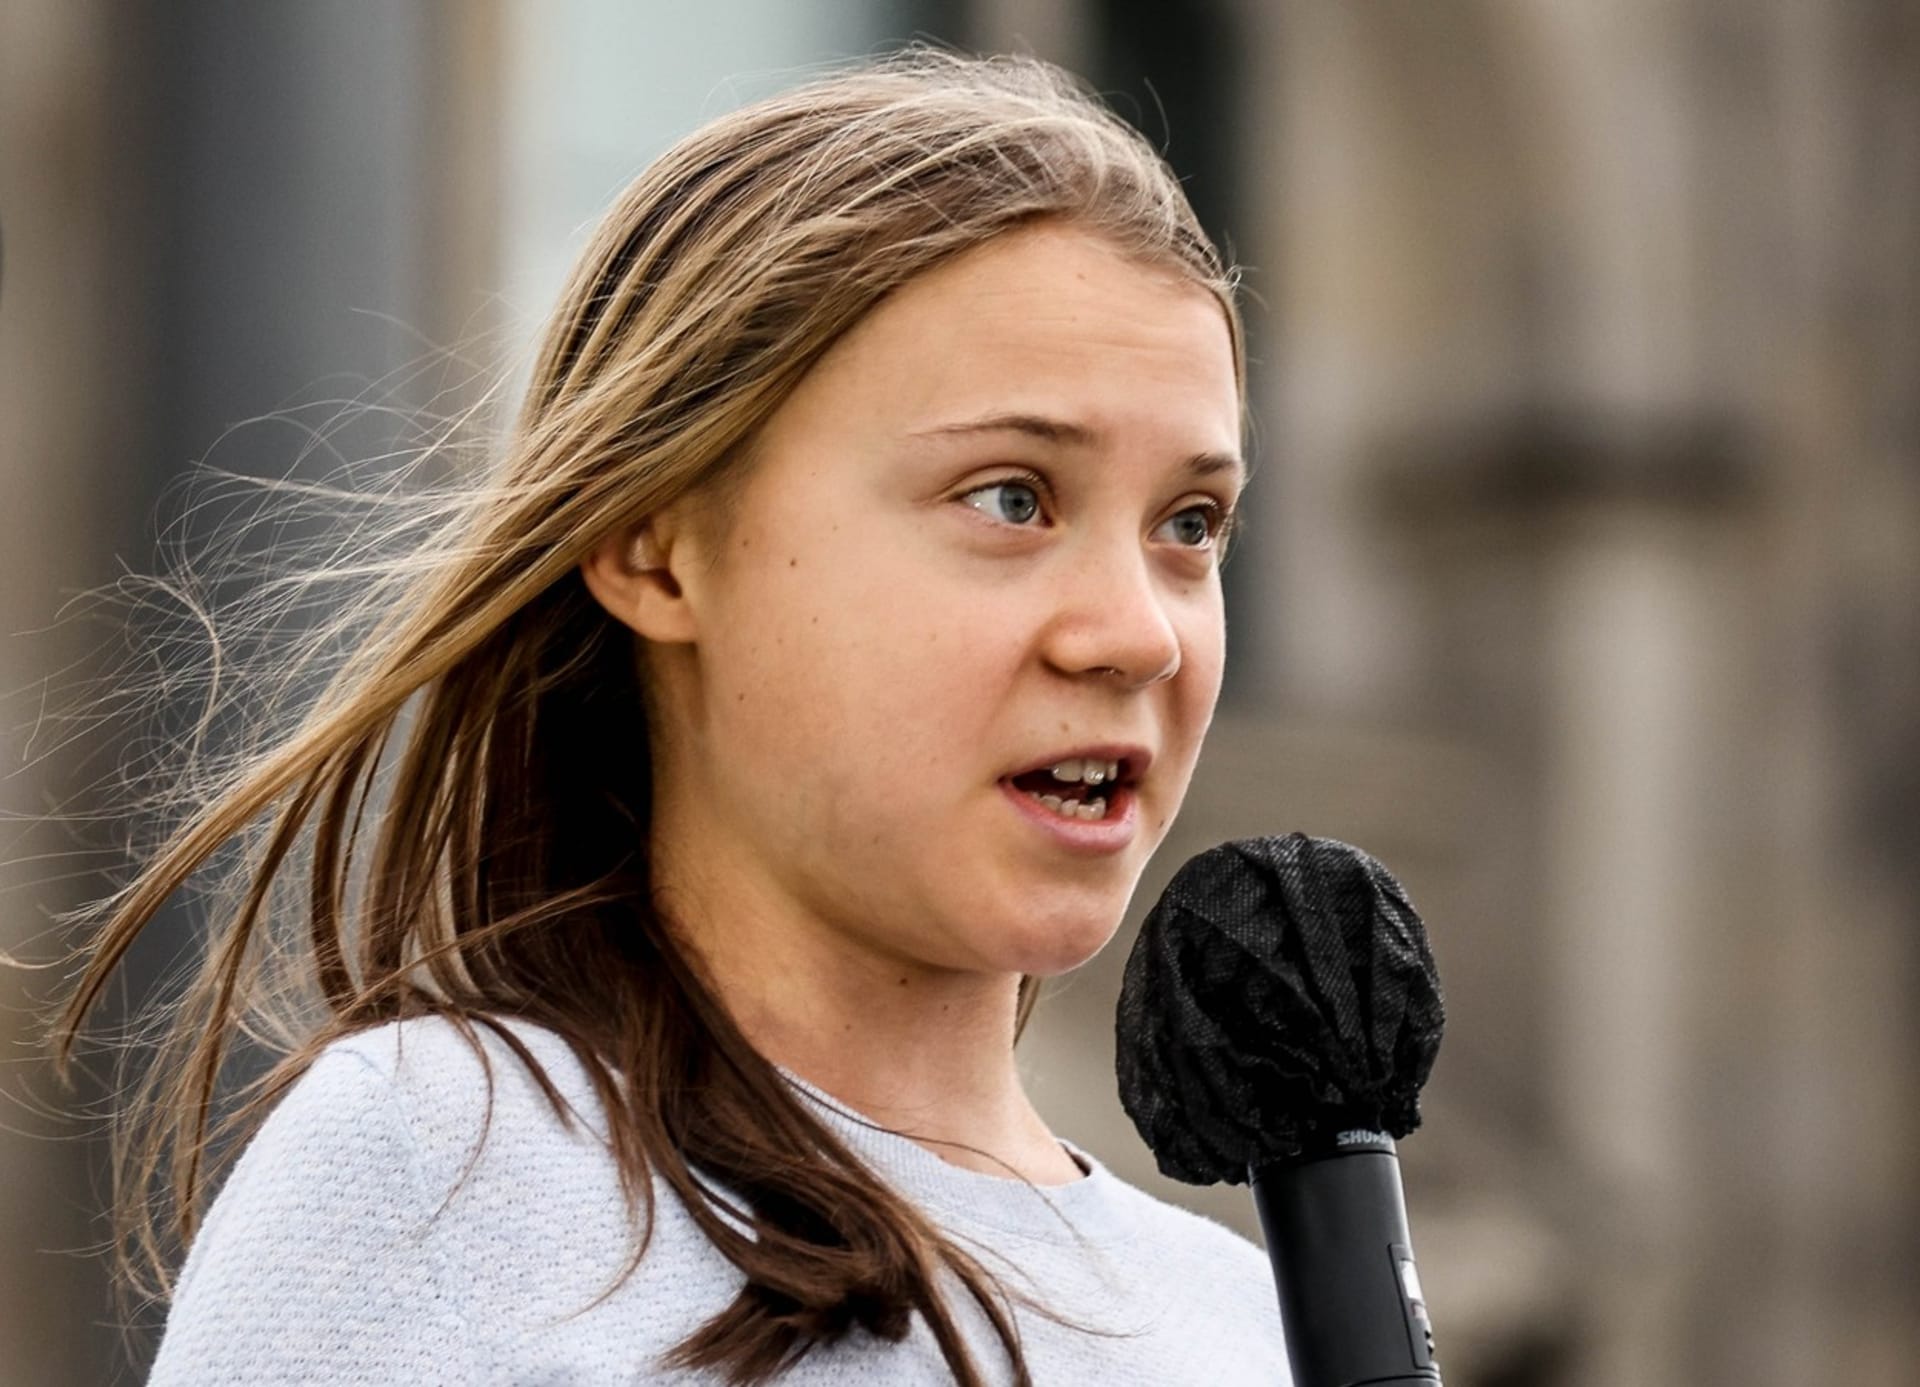 Klimatická aktivistka Greta Thunbergová